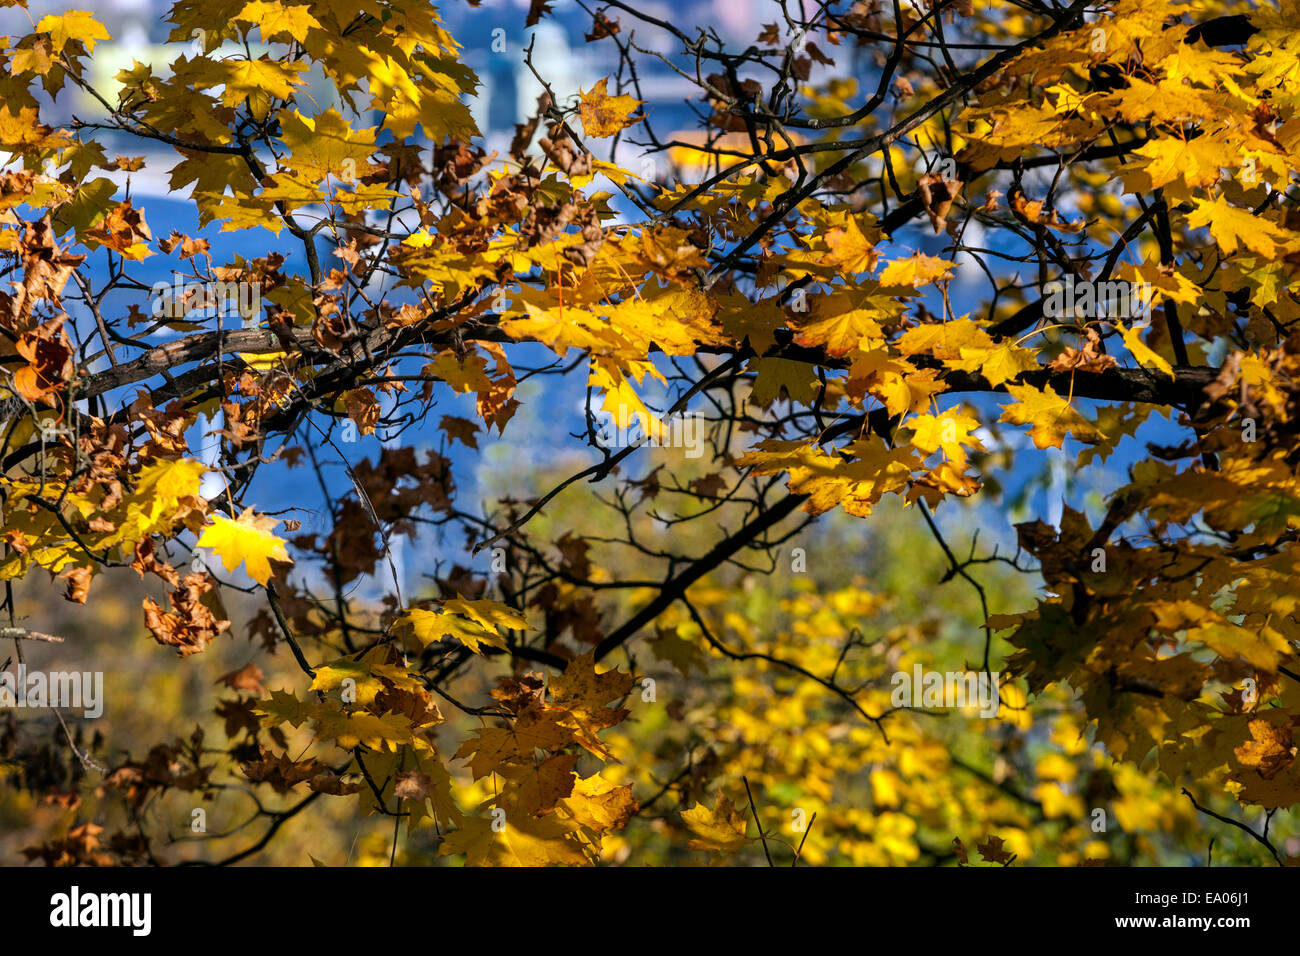 Garden foliage autumn, maple tree Leaves sunlight blue sky Stock Photo